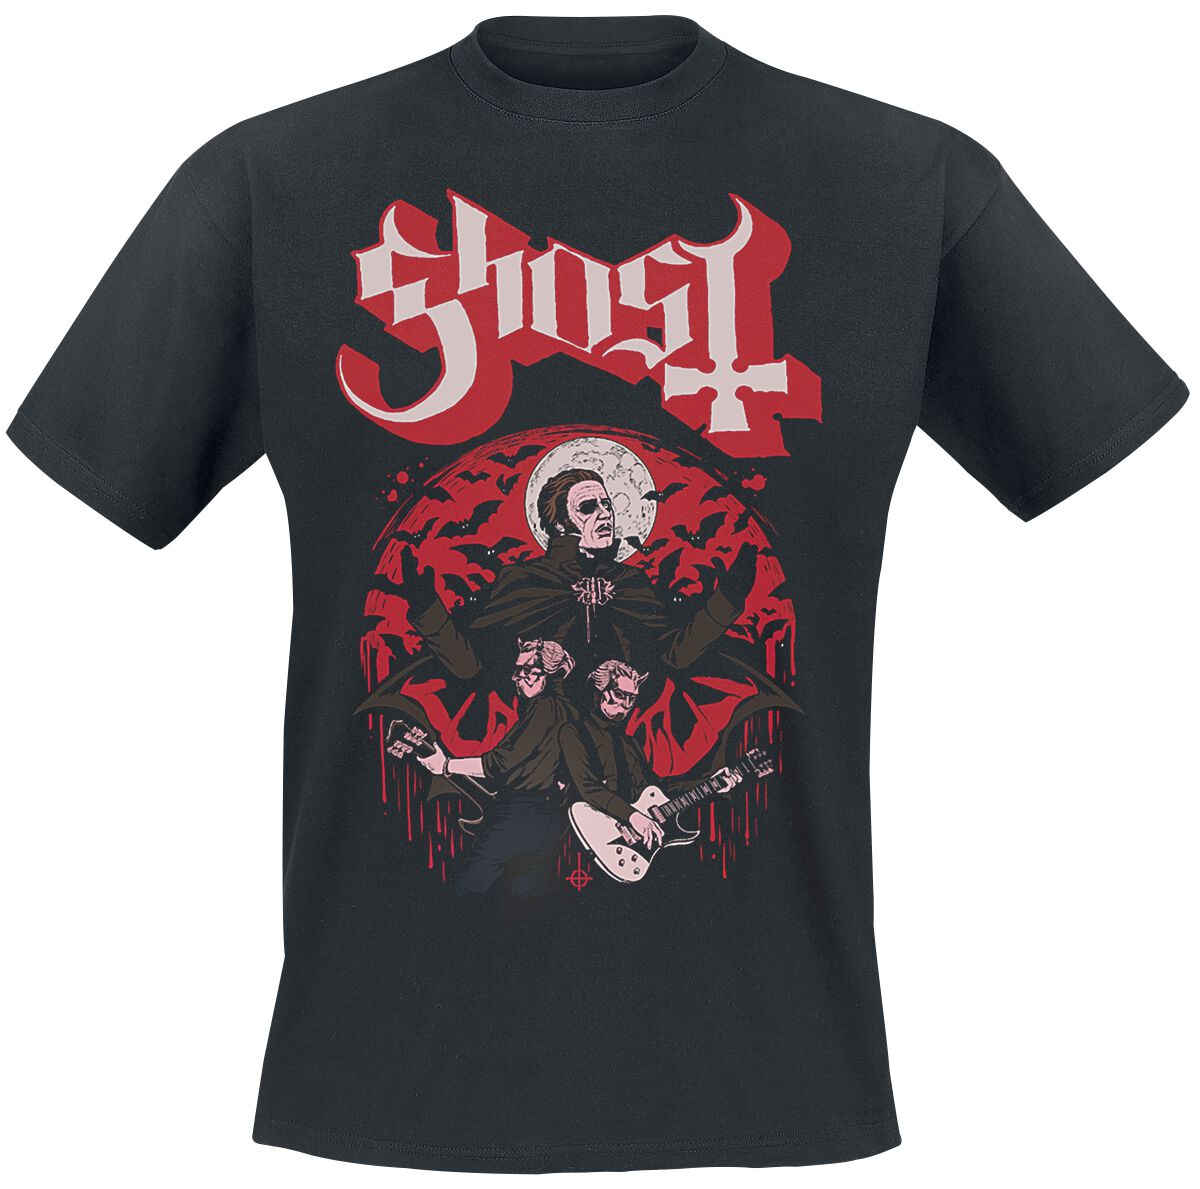 Ghost T-Shirt - Guitars - S bis 5XL - für Männer - Größe 3XL - schwarz  - Lizenziertes Merchandise!